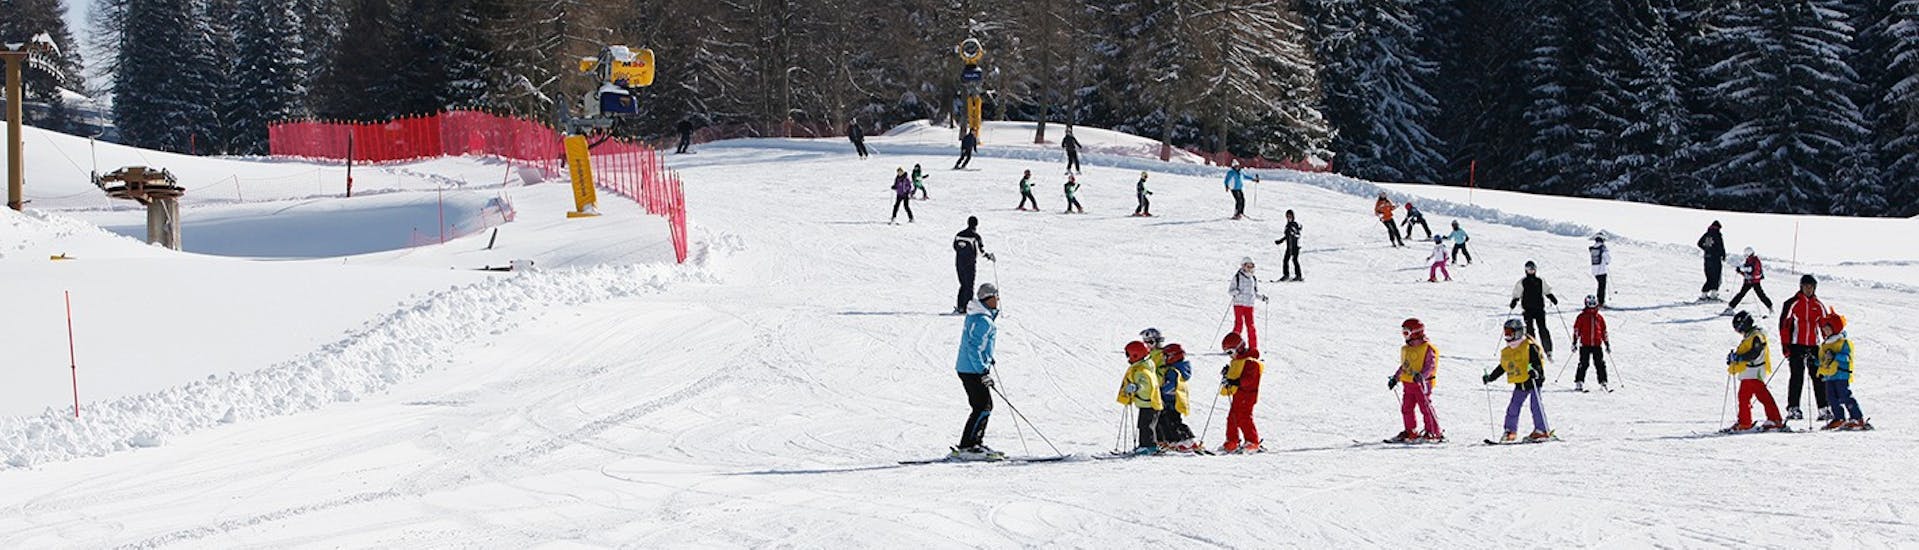 Cours de ski pour enfants (6-14 ans) pour Tous Niveaux - Demi-journée.